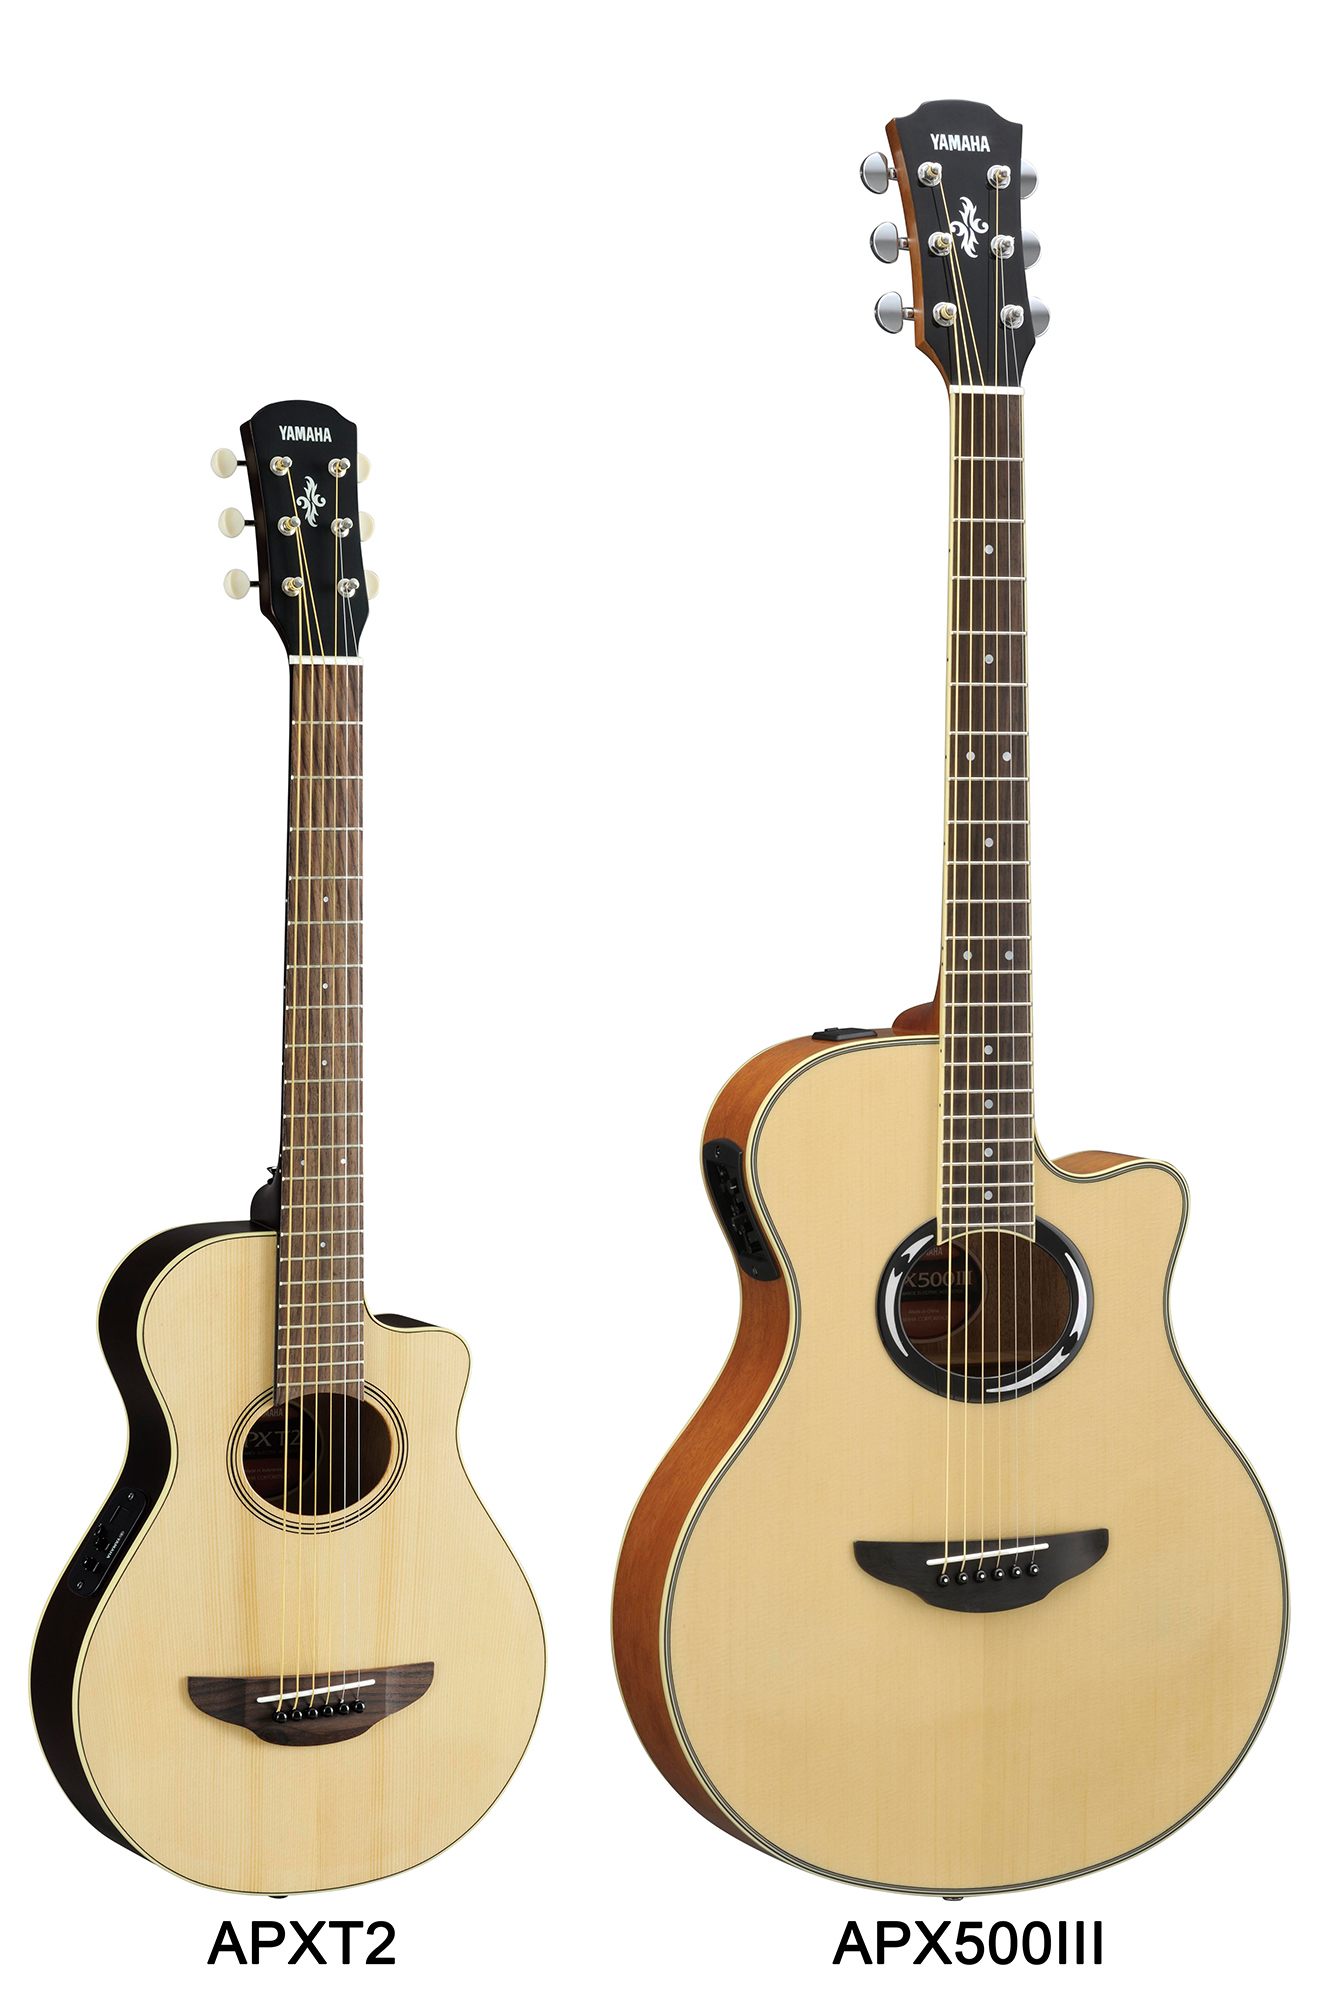 APXT2 - Features - Acoustic Guitars - Guitars, Basses & Amps